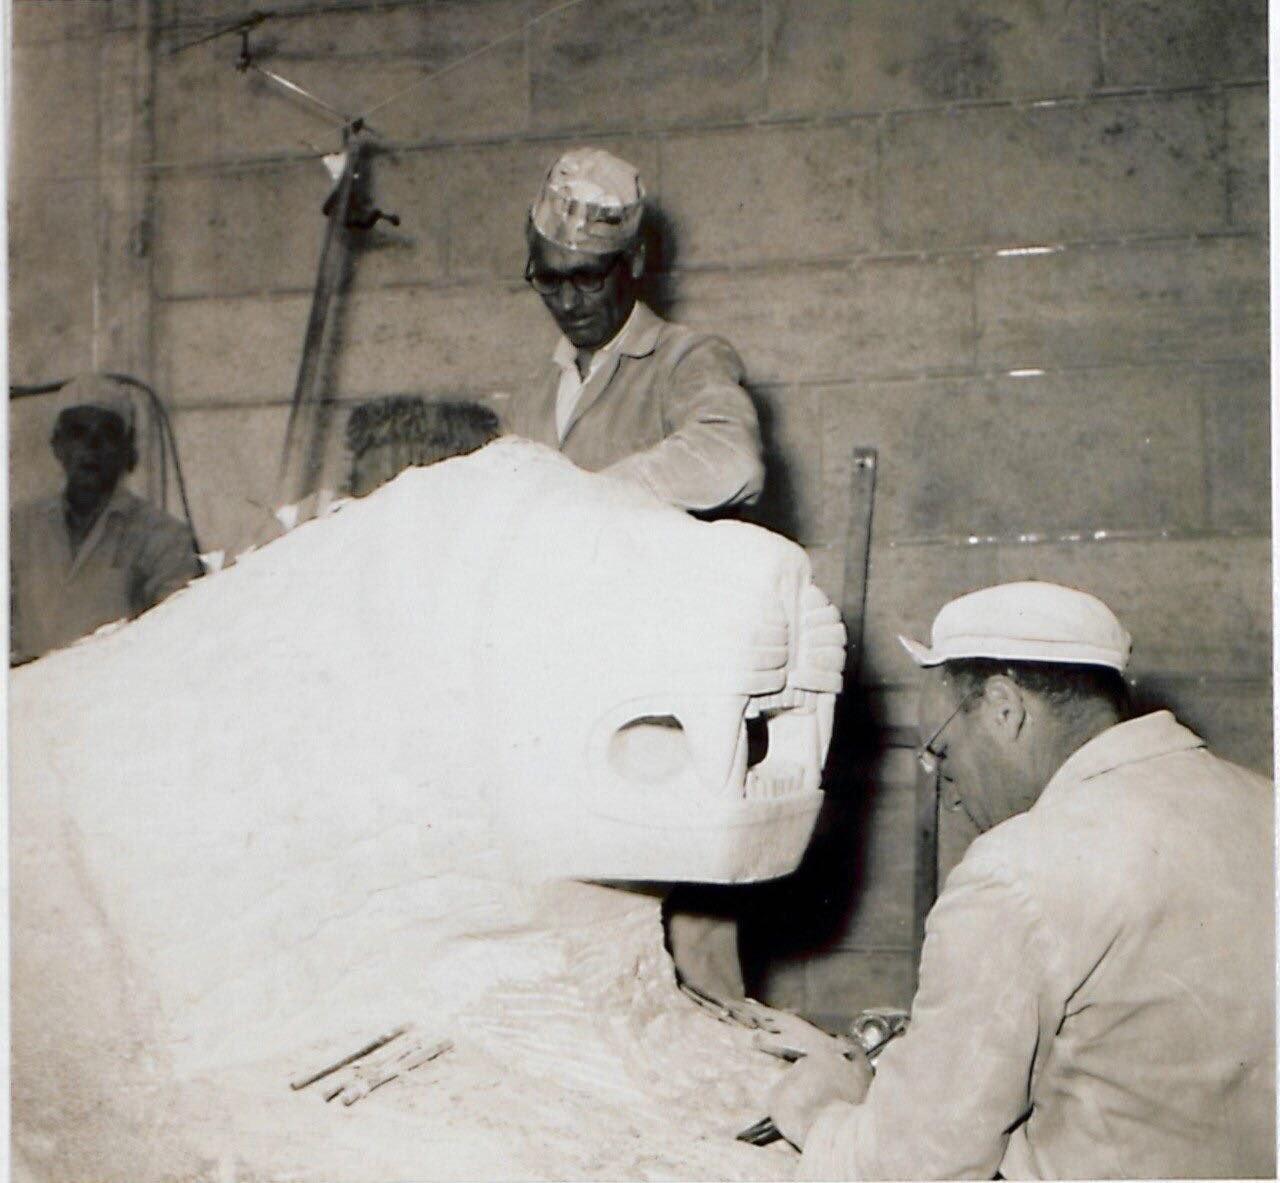 MSB, Anıtkabir'den tarihi fotoğrafları paylaştı